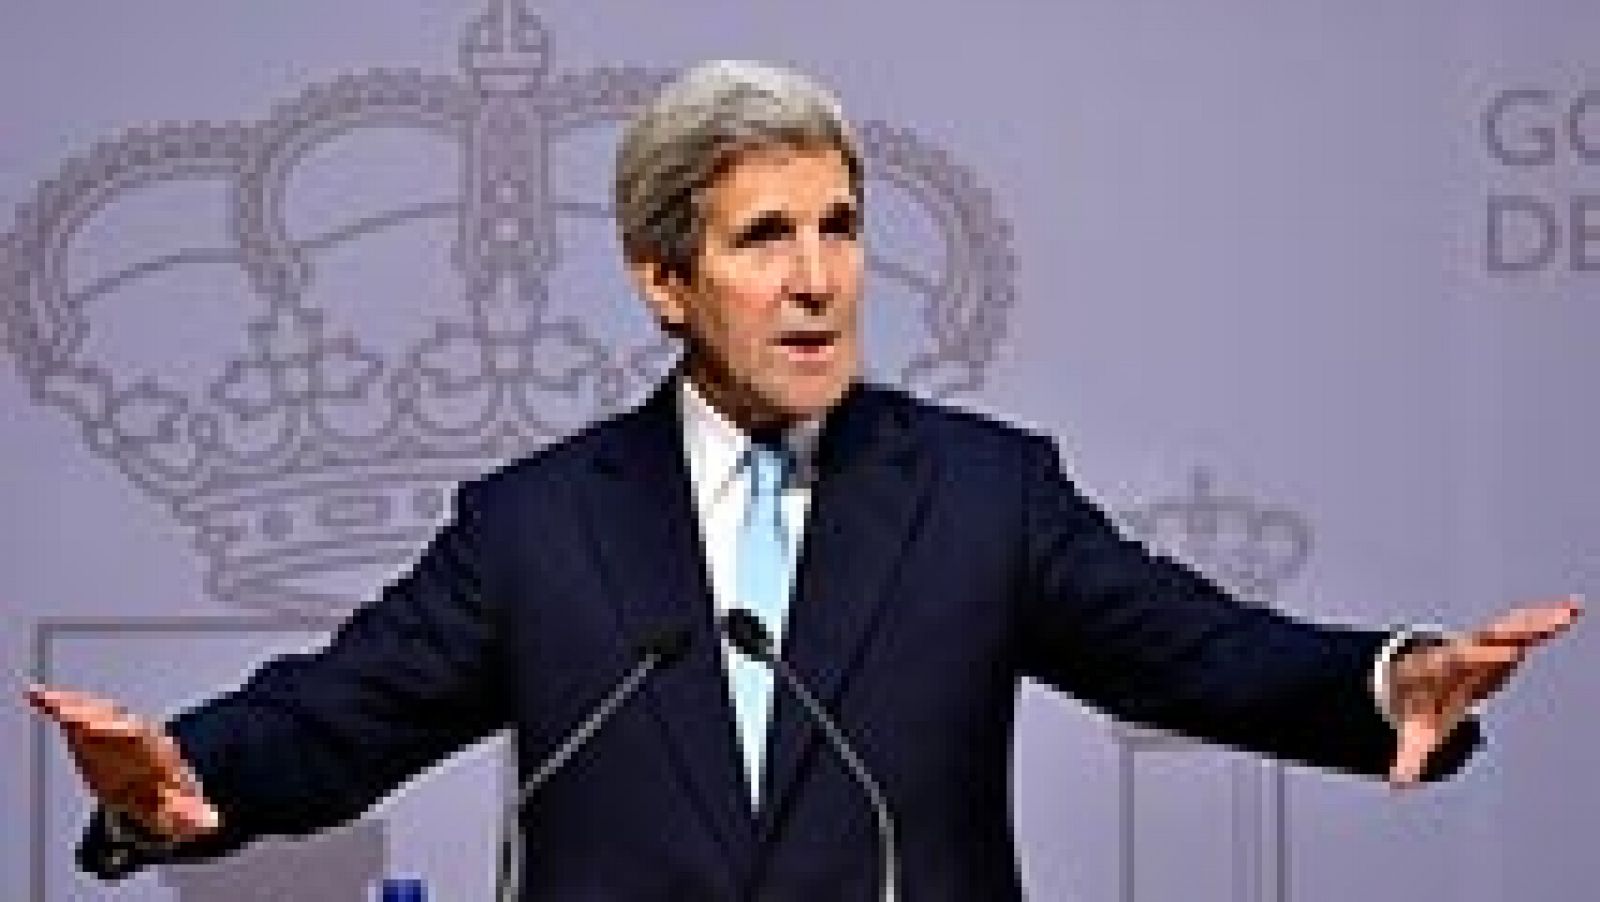 El secretario de Estado de EE.UU., John Kerry